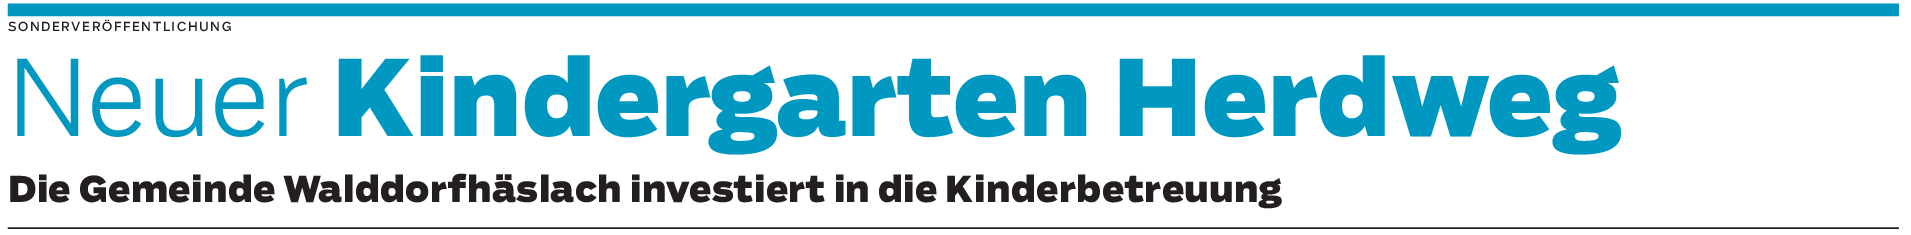 Kindergarten ind Walddorfhäslach: Ein ganz und gar besonderes Projekt